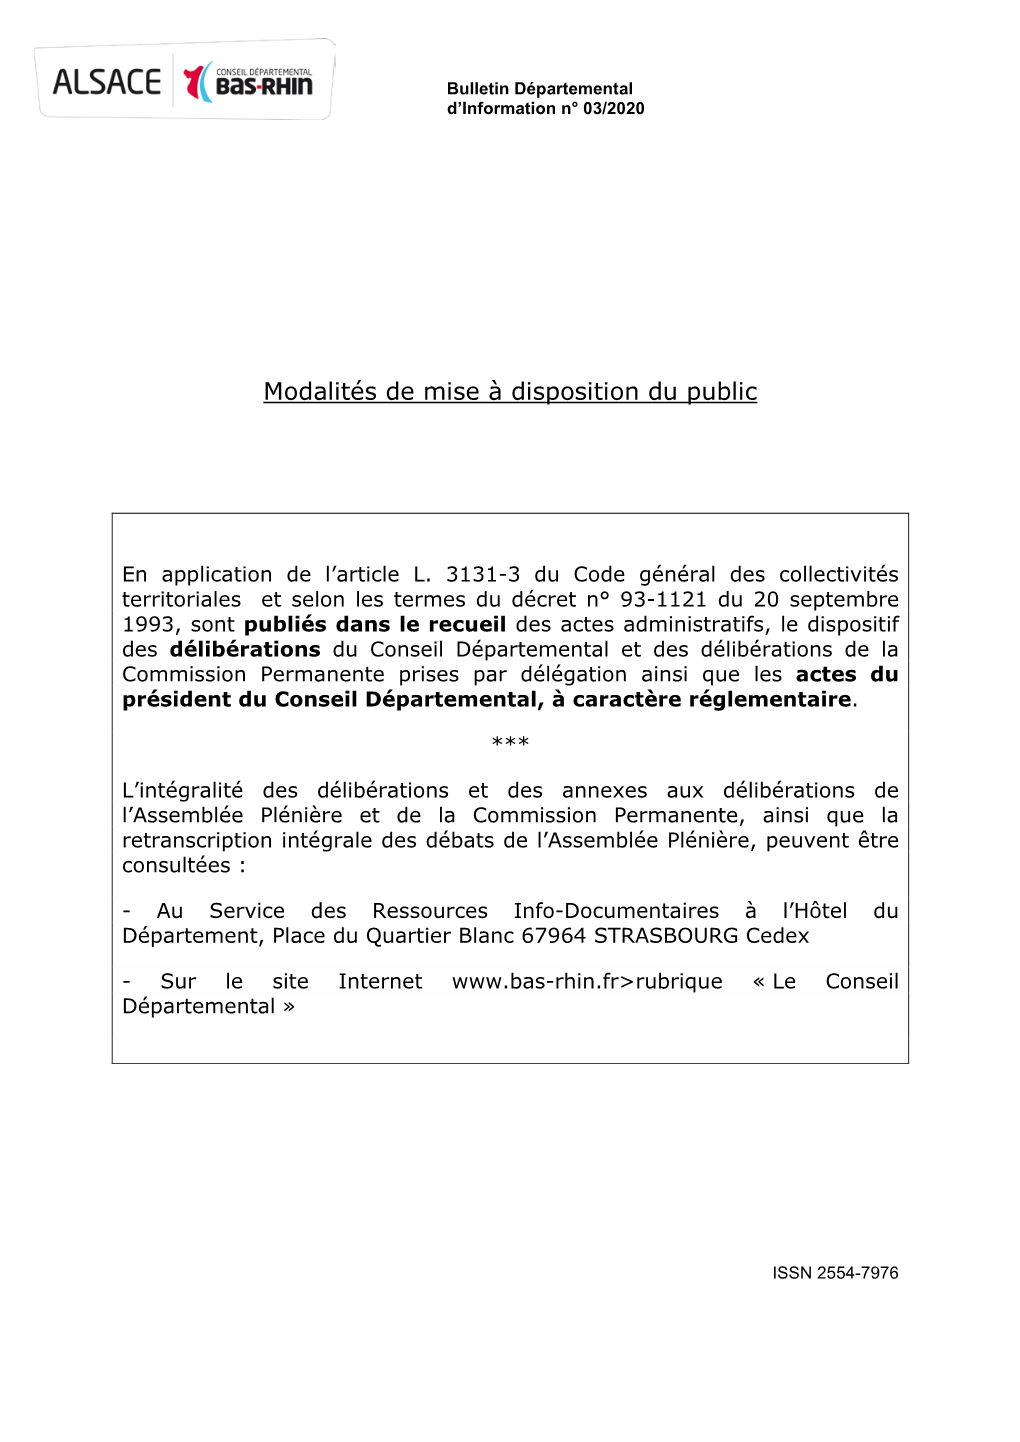 Bulletin Départemental D'information 03/2020